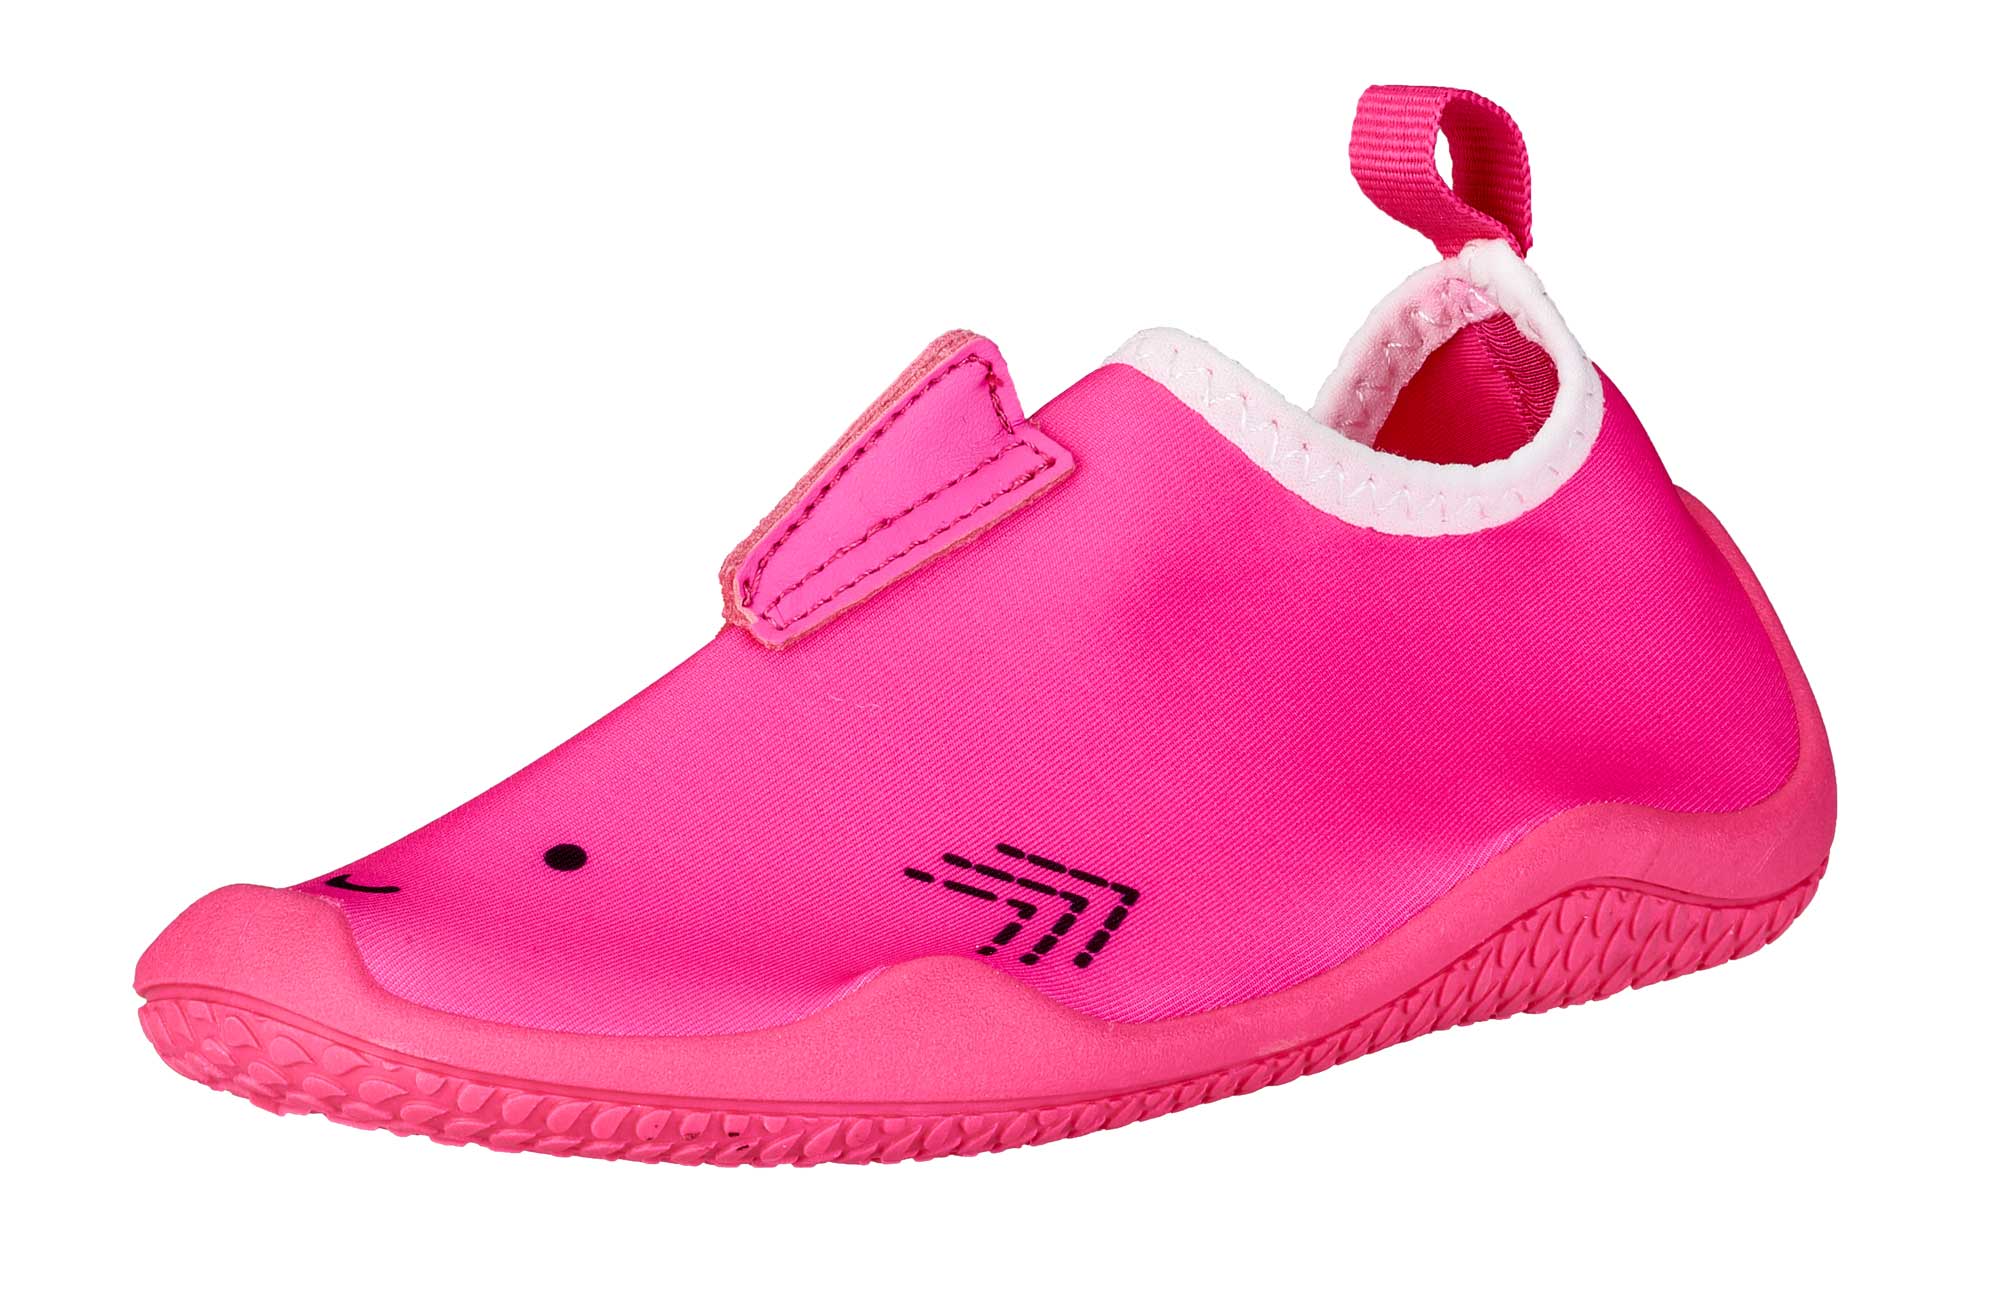 BALLOP Kids Schuhe Shark pink